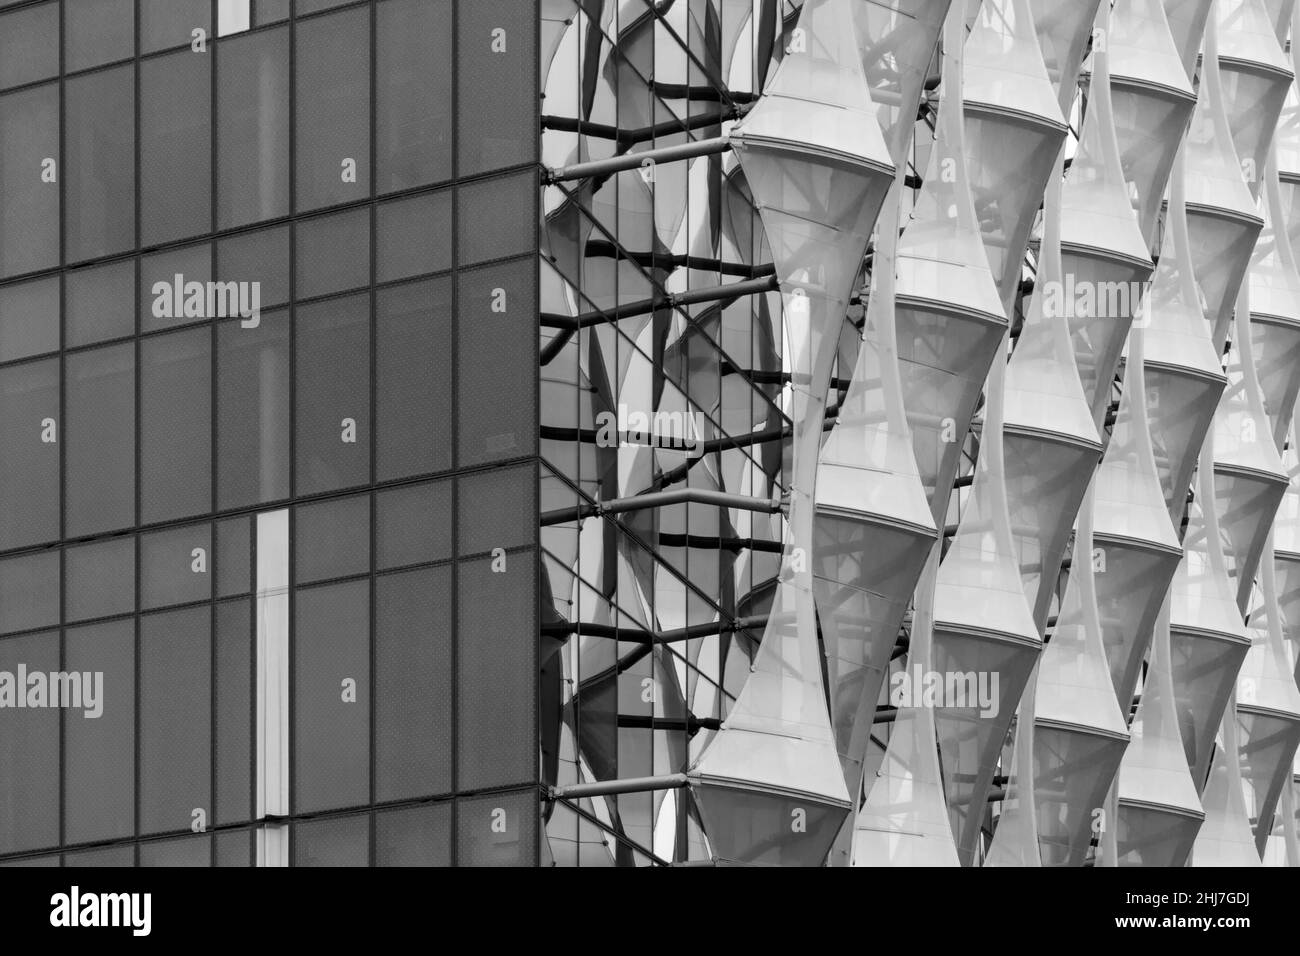 Edificio dell'Ambasciata DEGLI STATI UNITI, edificio dell'Ambasciata degli Stati Uniti d'America, Ambasciata americana a Nine Elms, Londra, Regno Unito nel mese di dicembre - dettaglio di architettura Foto Stock